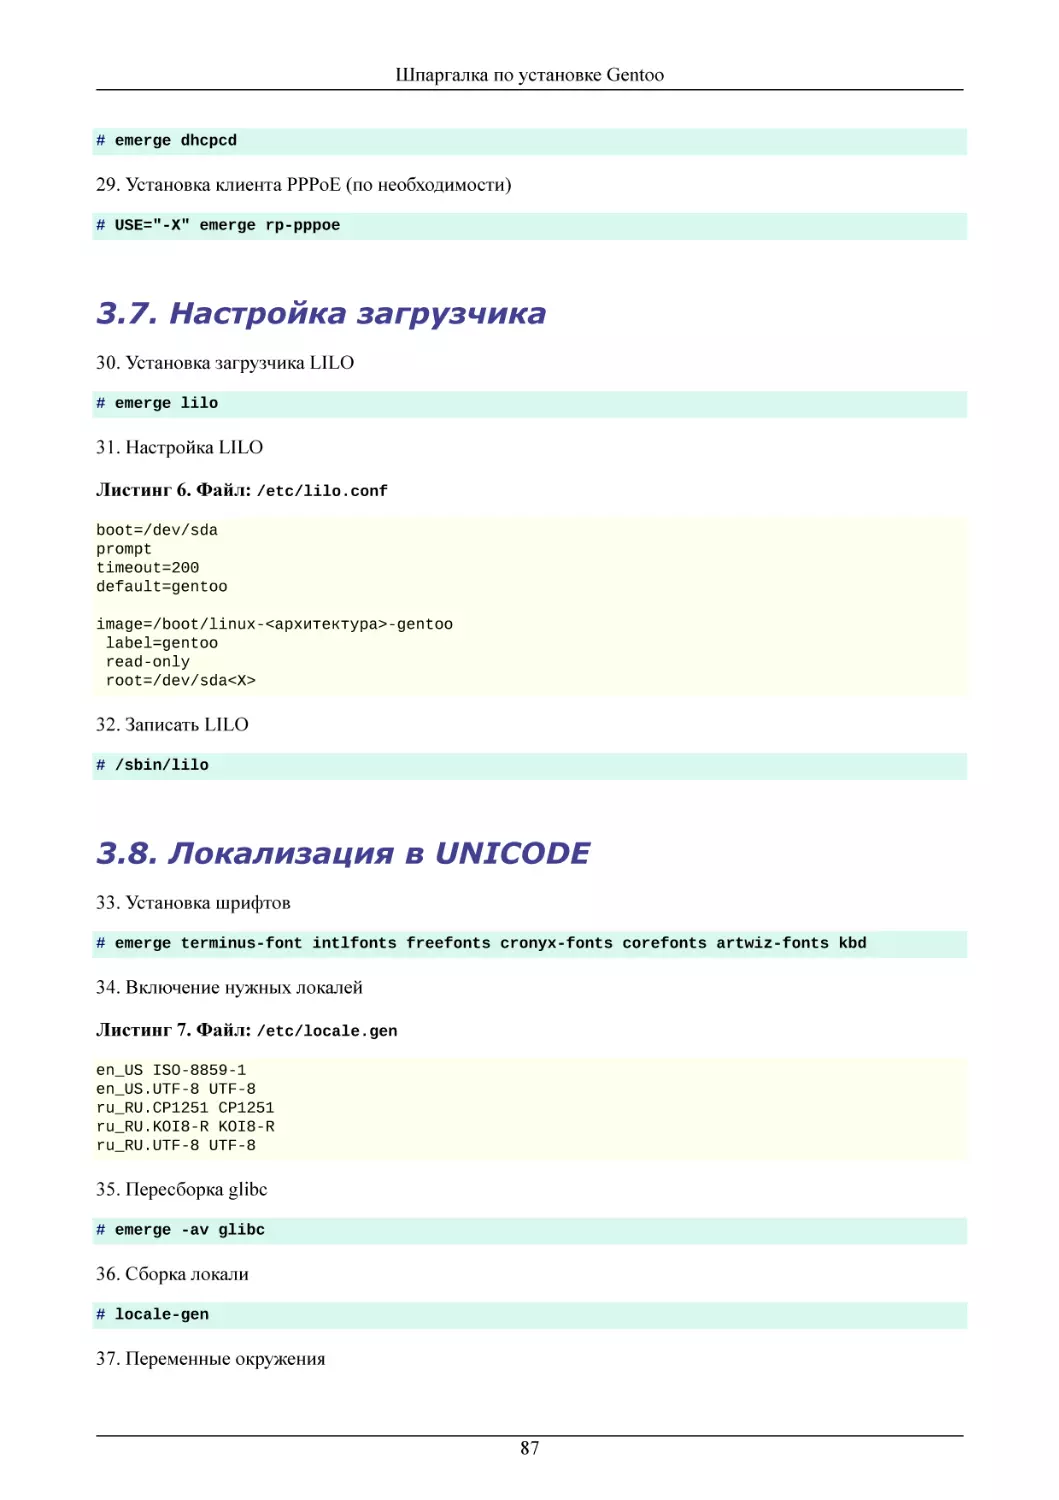 Настройка загрузчика
Локализация в UNICODE